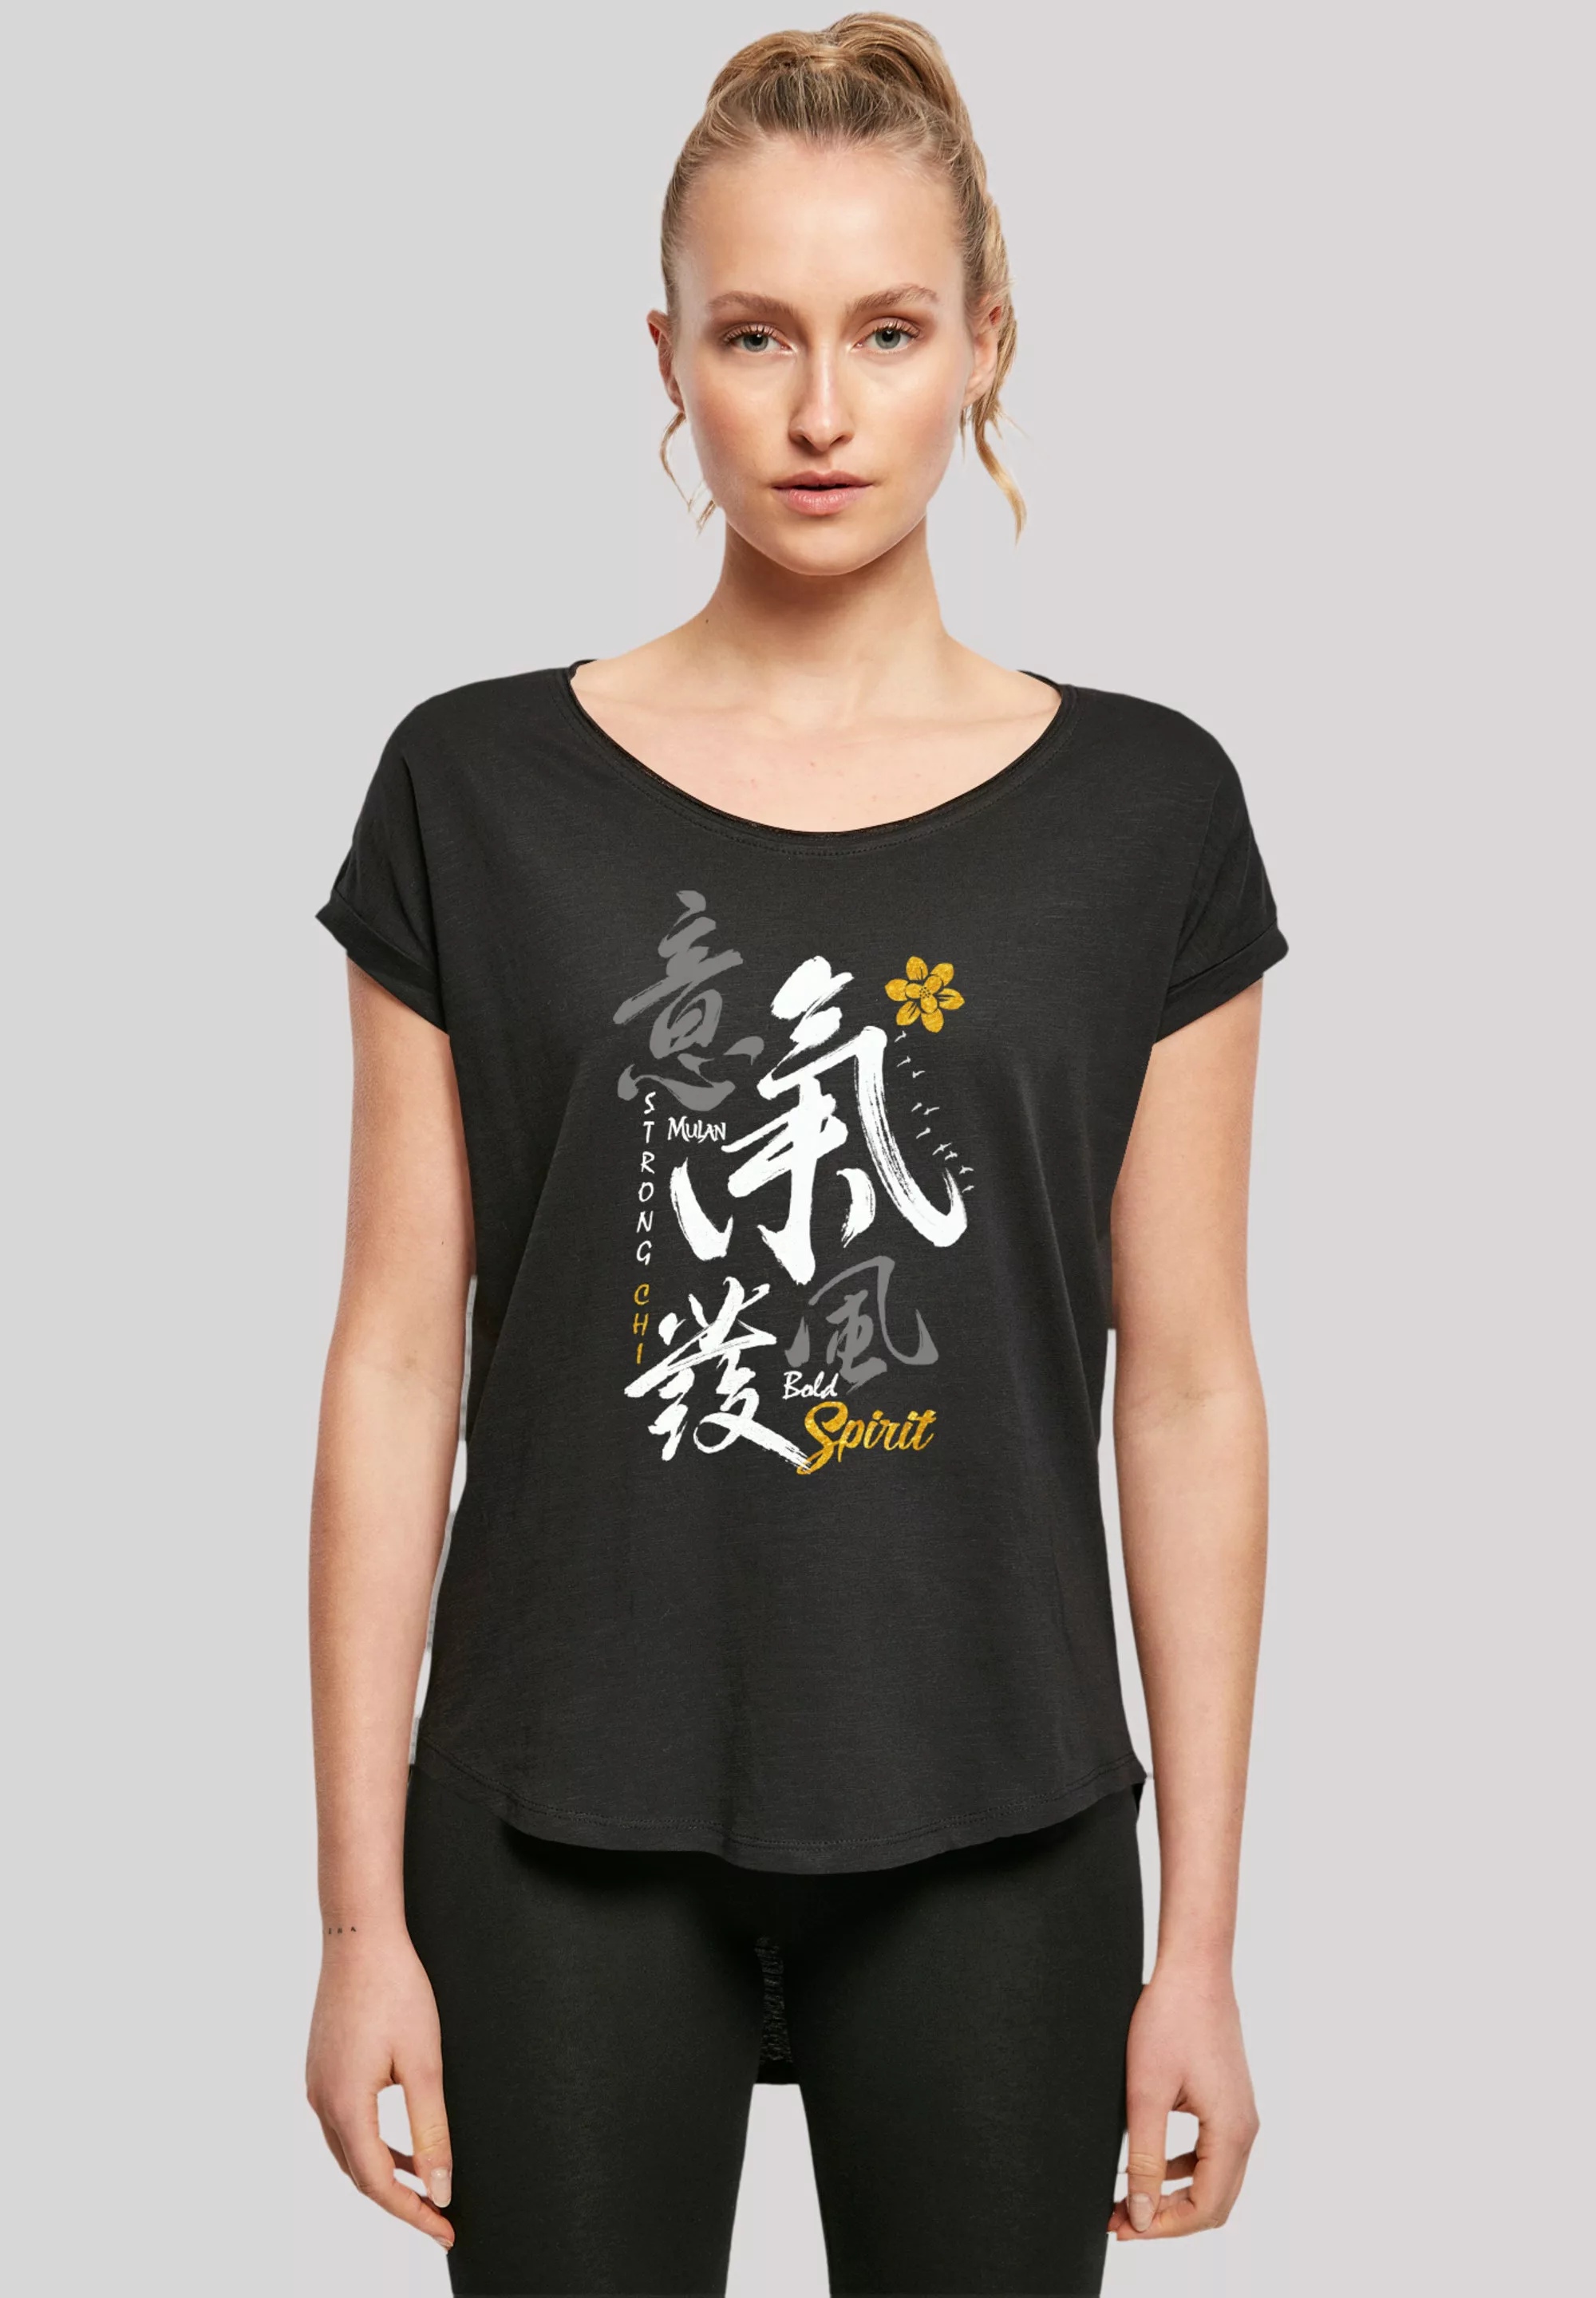 F4NT4STIC T-Shirt "Disney Mulan Bold Spirit", Premium Qualität günstig online kaufen